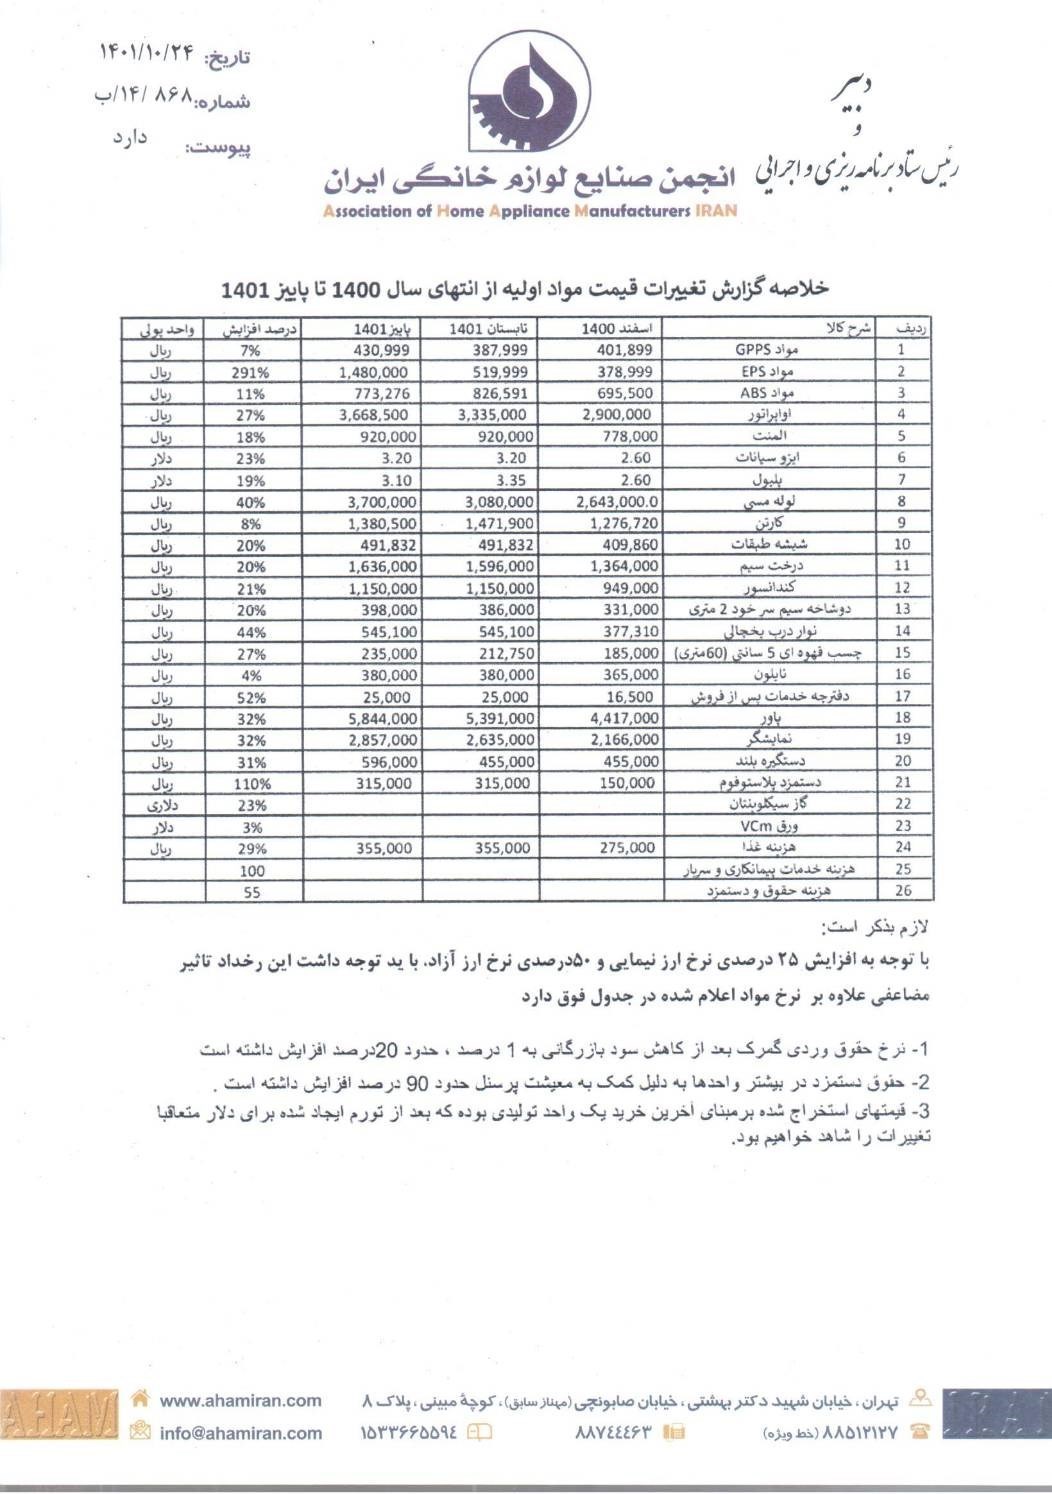 واکنش انجمن صنایع لوازم خانگی ایران به افزایش قیمت ها در بازار + سند